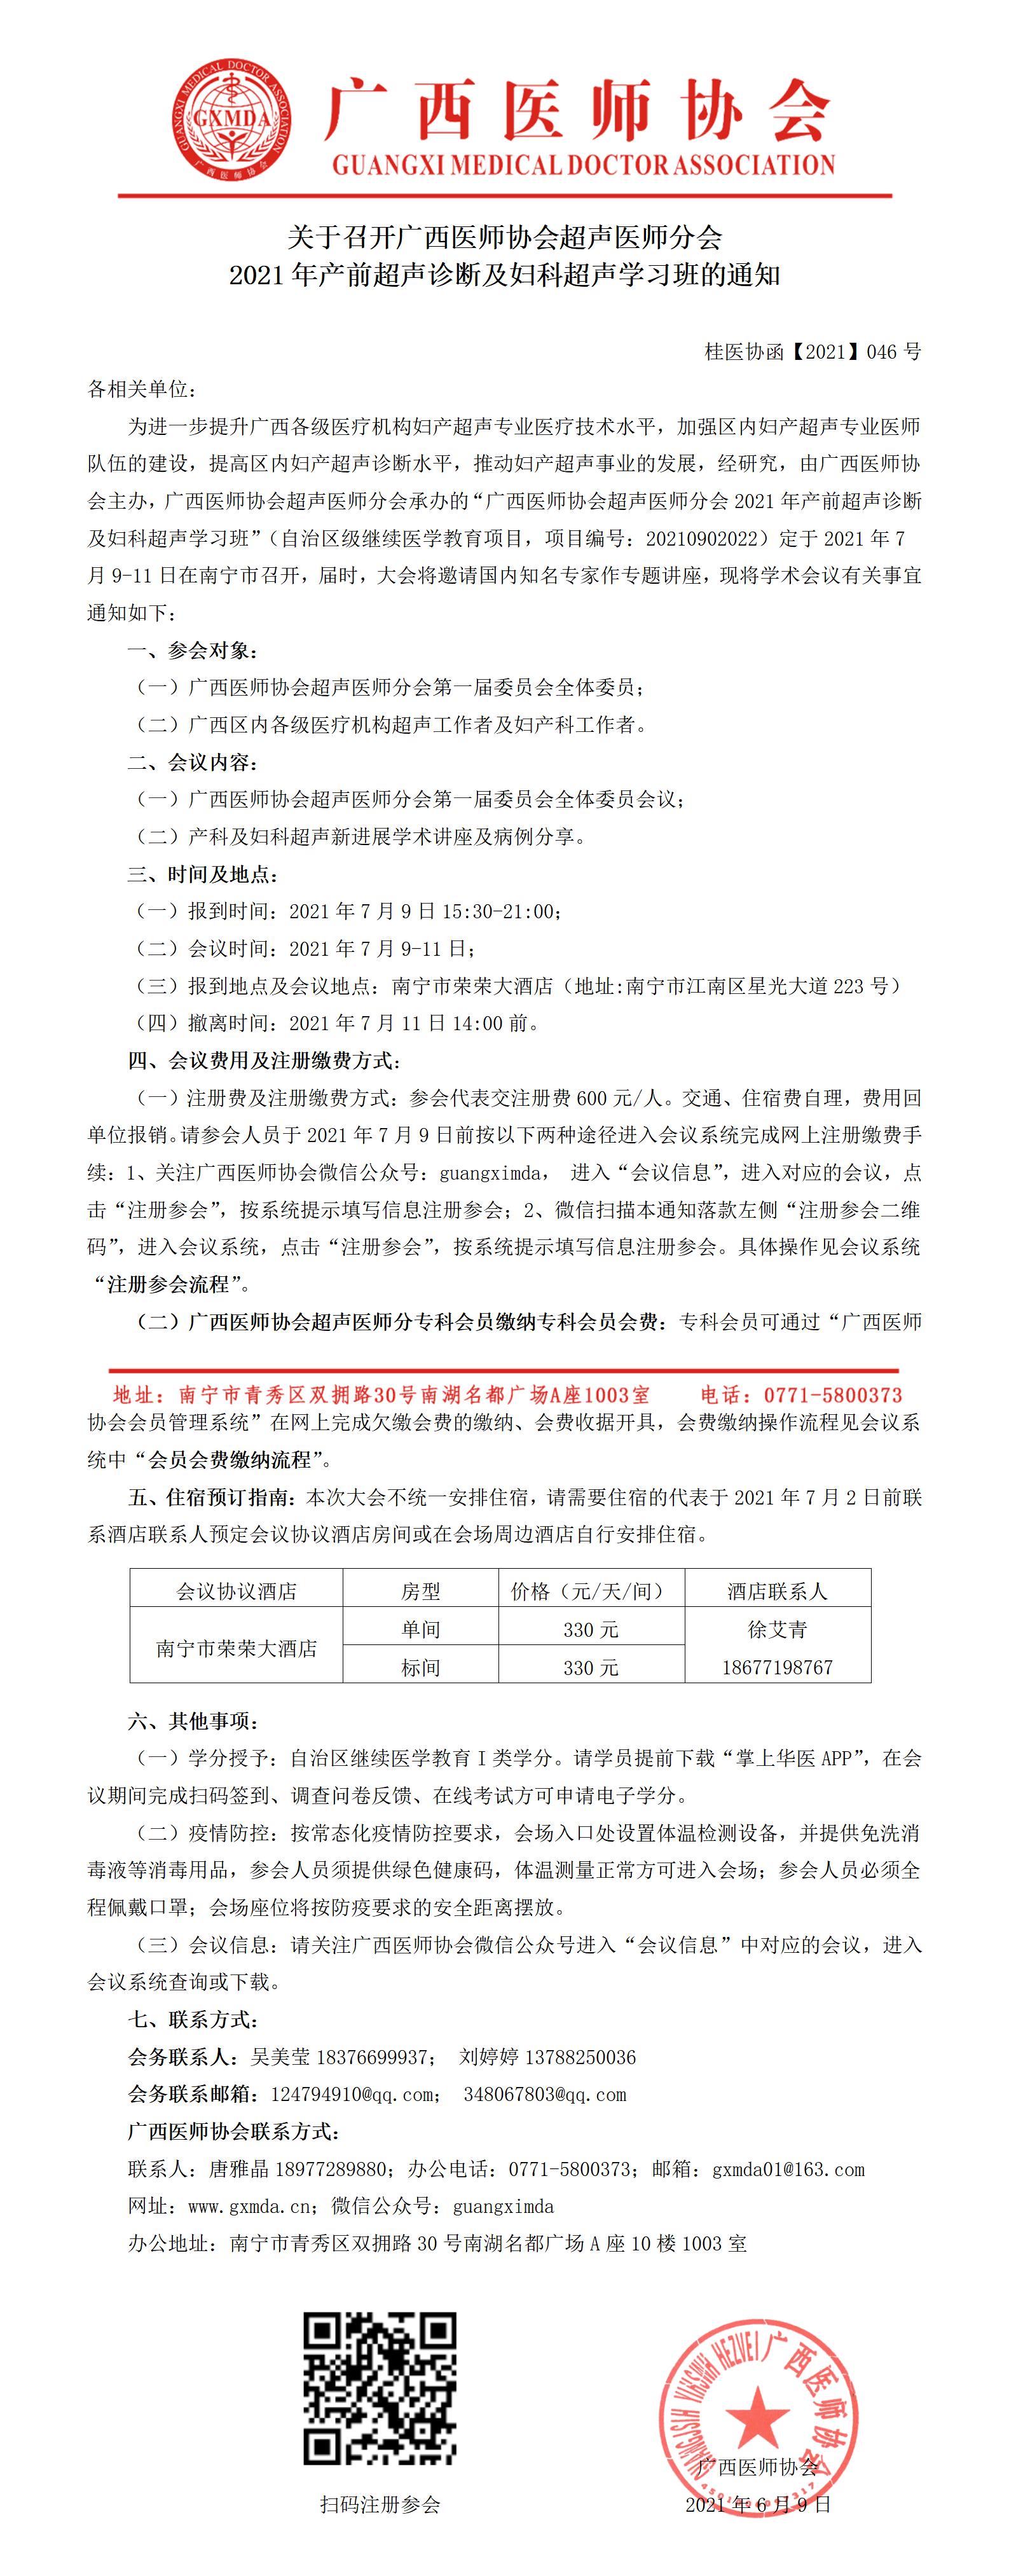 【2021】046号 关于召开广西医师协会超声医师分会2021年产前超声诊断及妇科超声学习班的通知_01.jpg